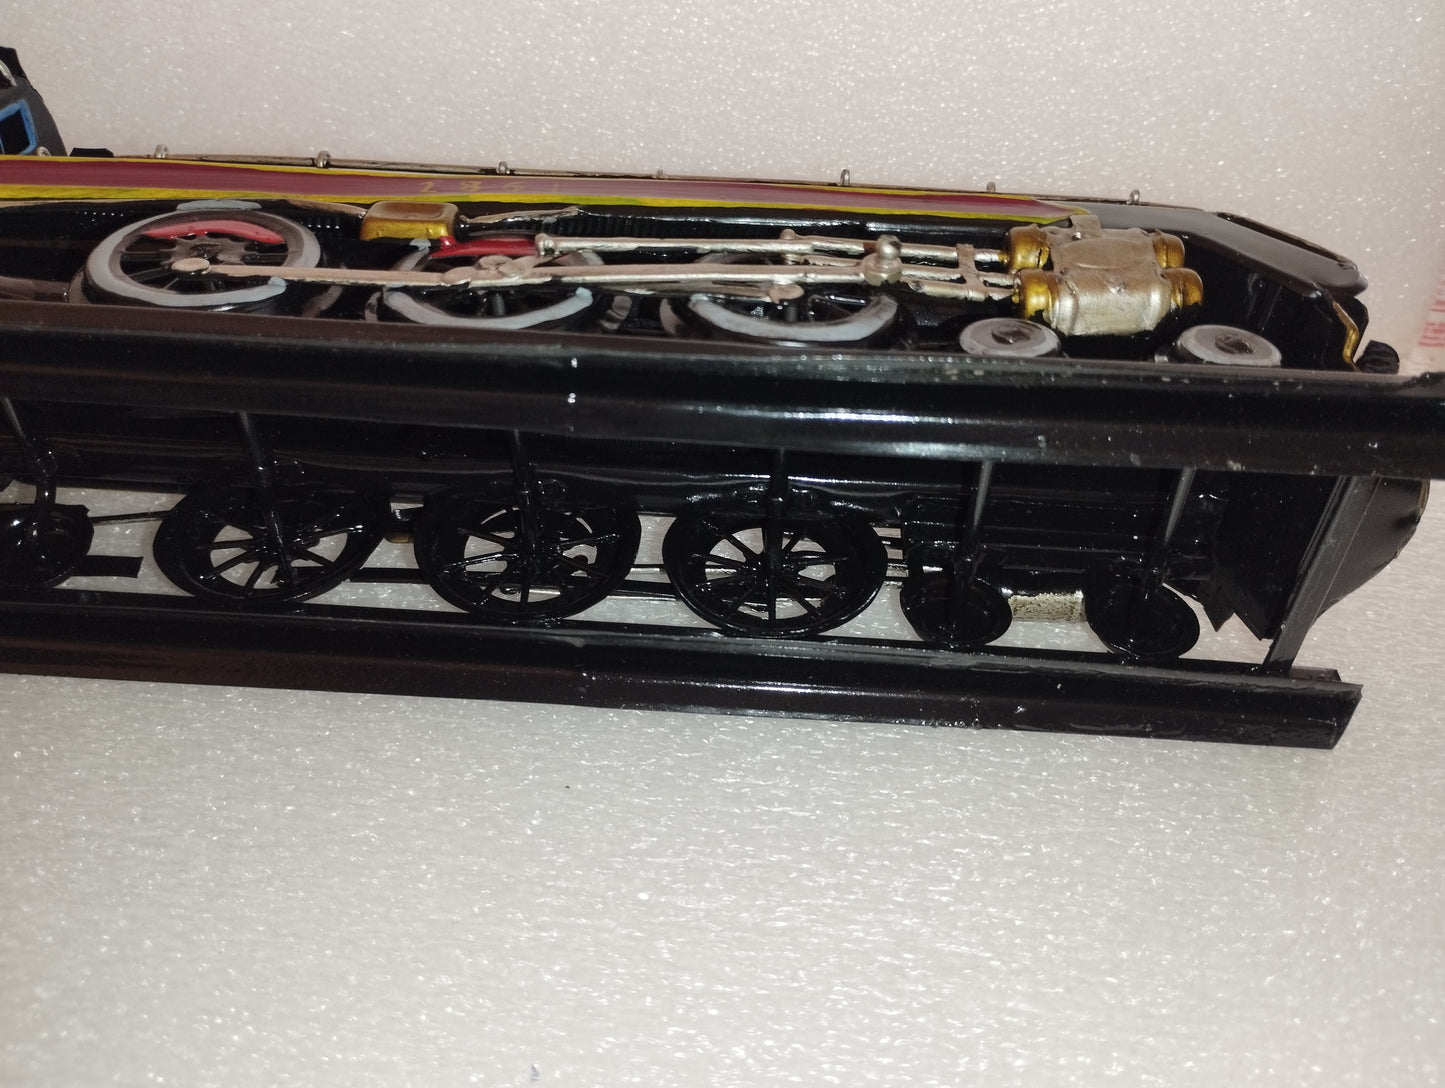 Modello Statico Di Locomotiva A Vapore In Metallo
Lunghezza cm 47,5 cm circa